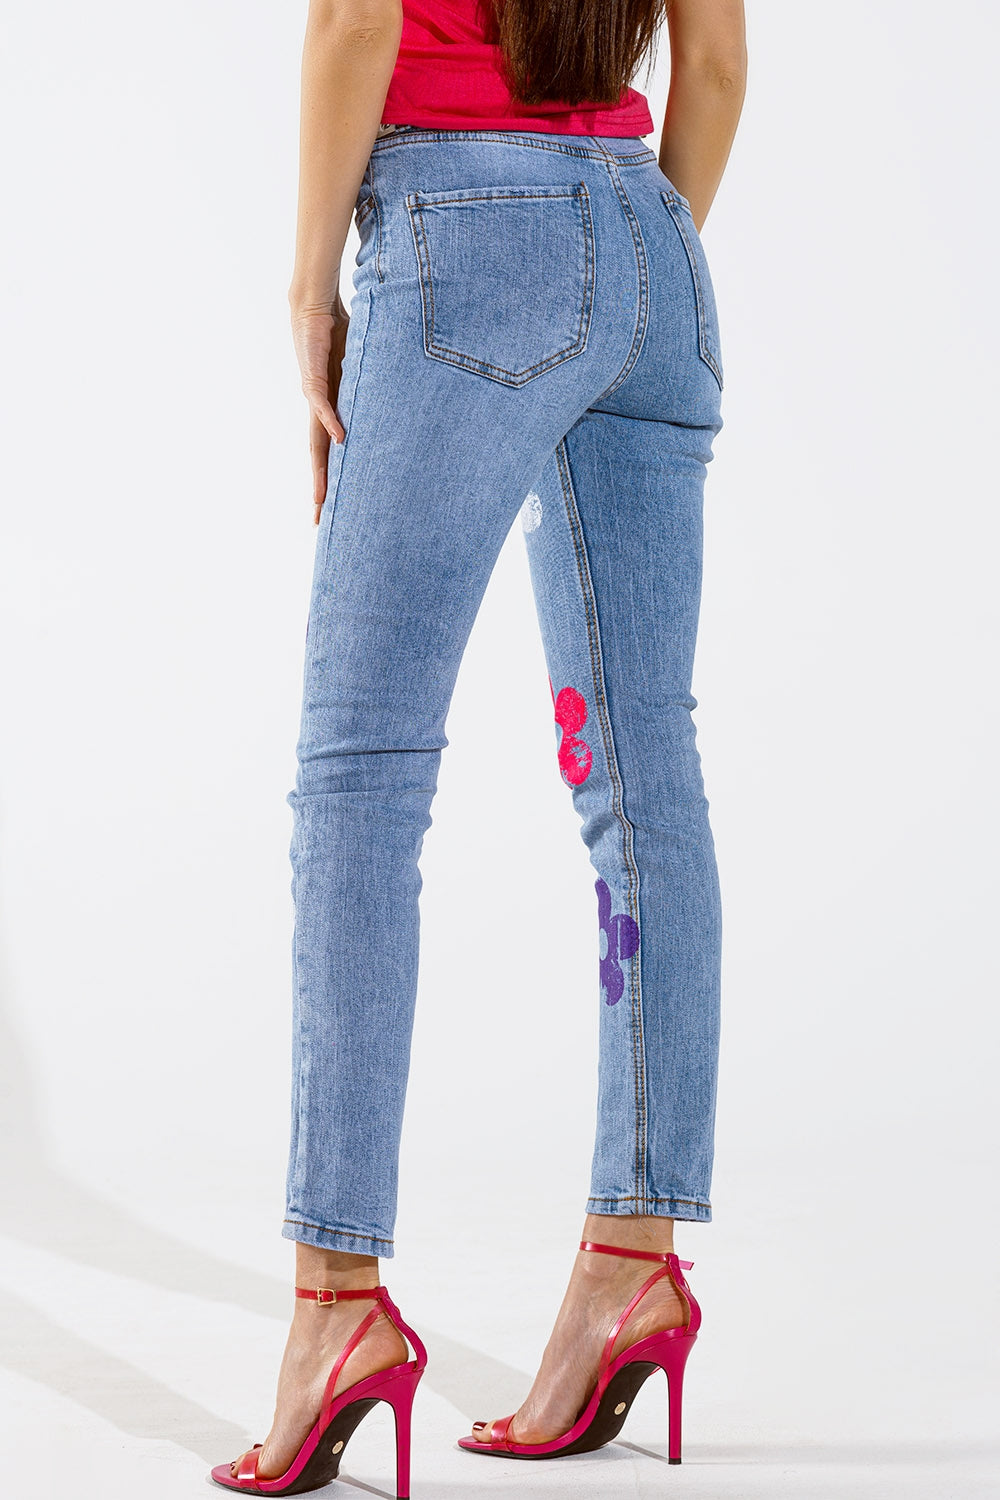 Jeans 5 tasche skinny con dettaglio floreale